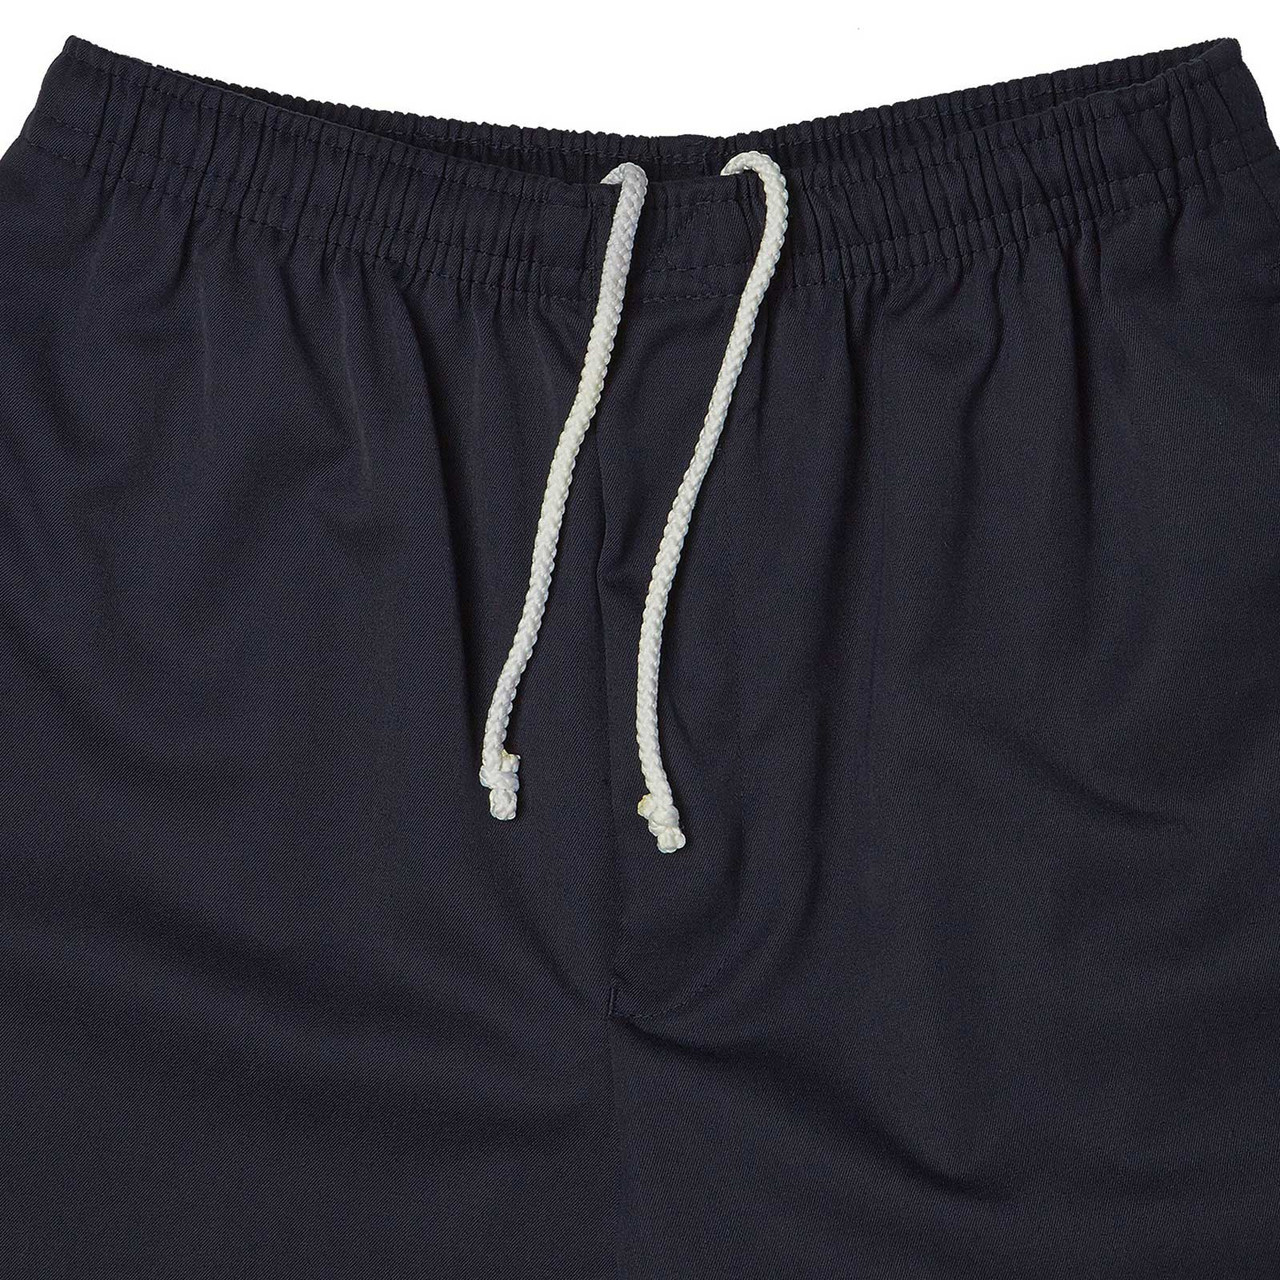 PREFECT | High School Shorts | Boys | buy online | blankclothing.com.au